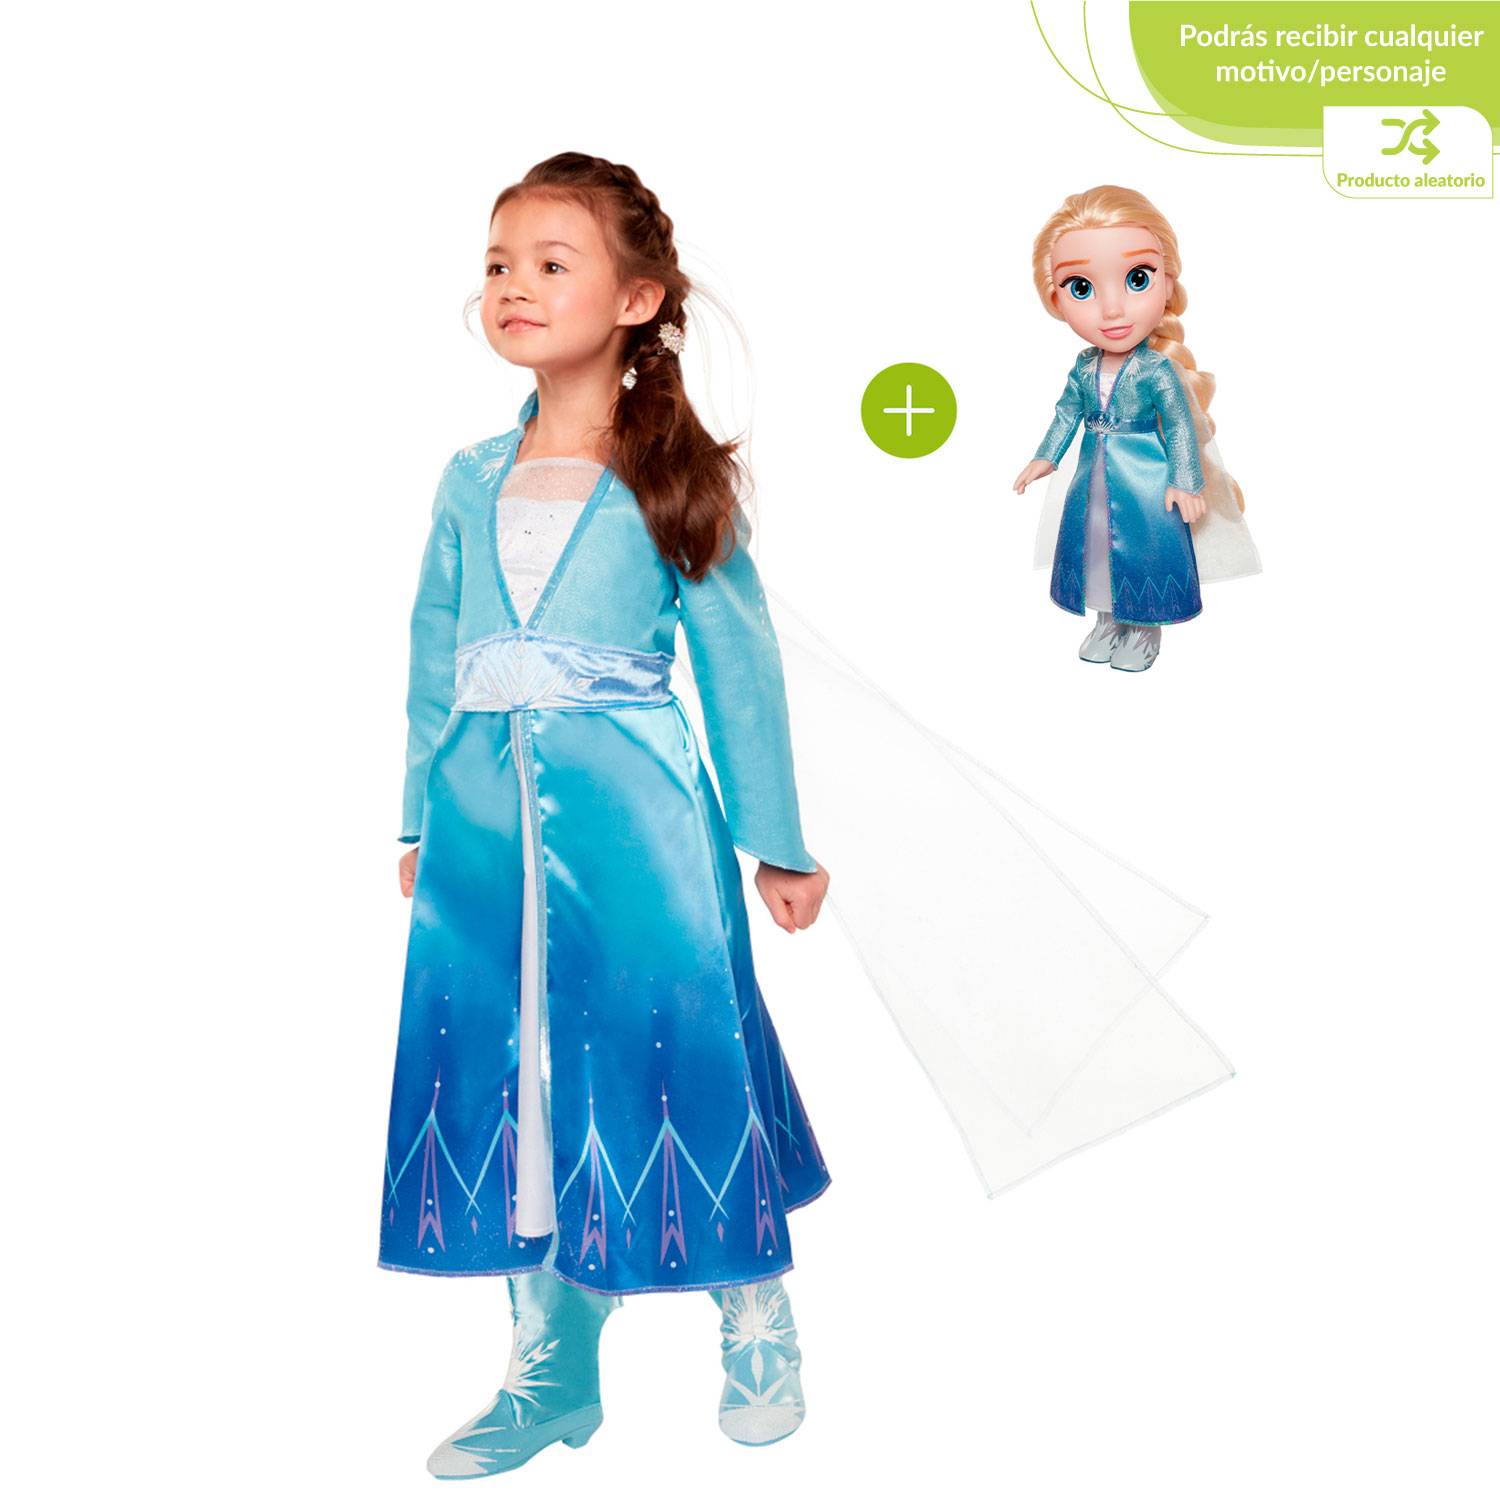 FROZEN Frozen 2 muñeca aventurera + Disfraz Figura Aleatoria 